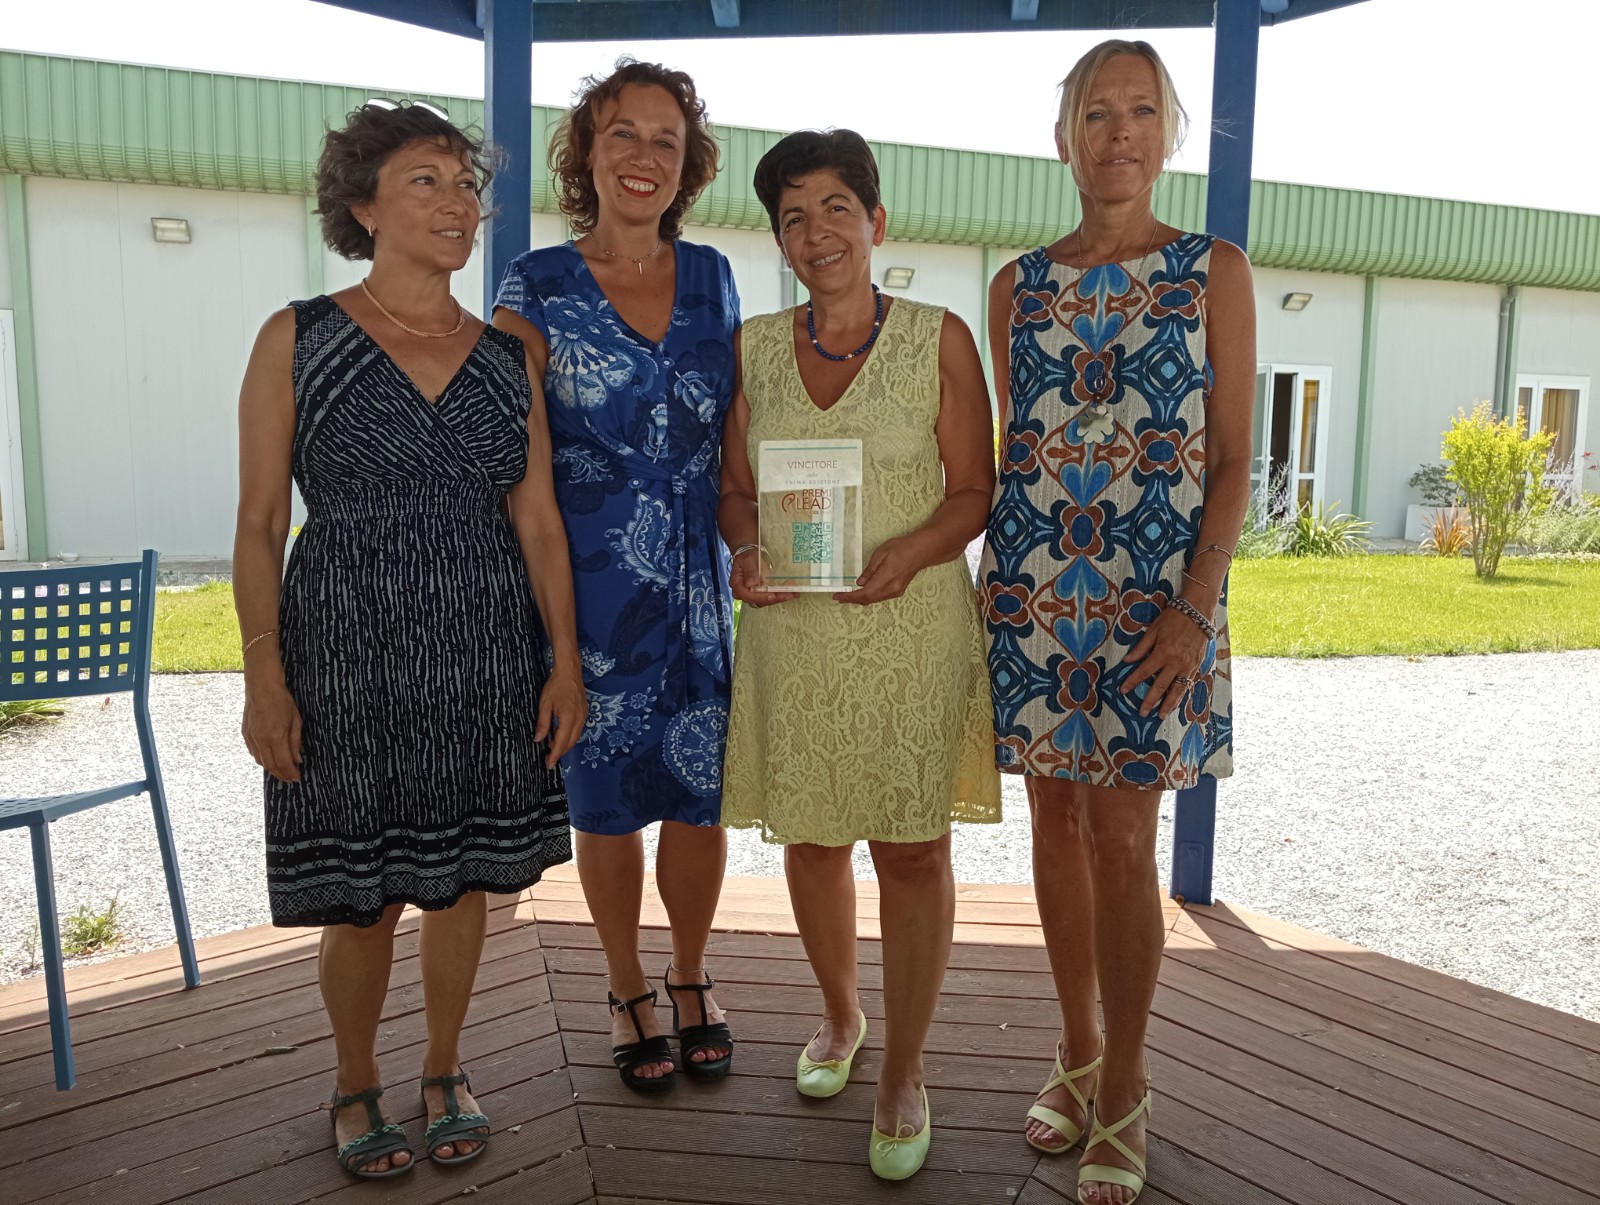 Donne in sanità, premio Leads a Aou pisana. Nardini e Bezzini: “Riconoscimento importante”